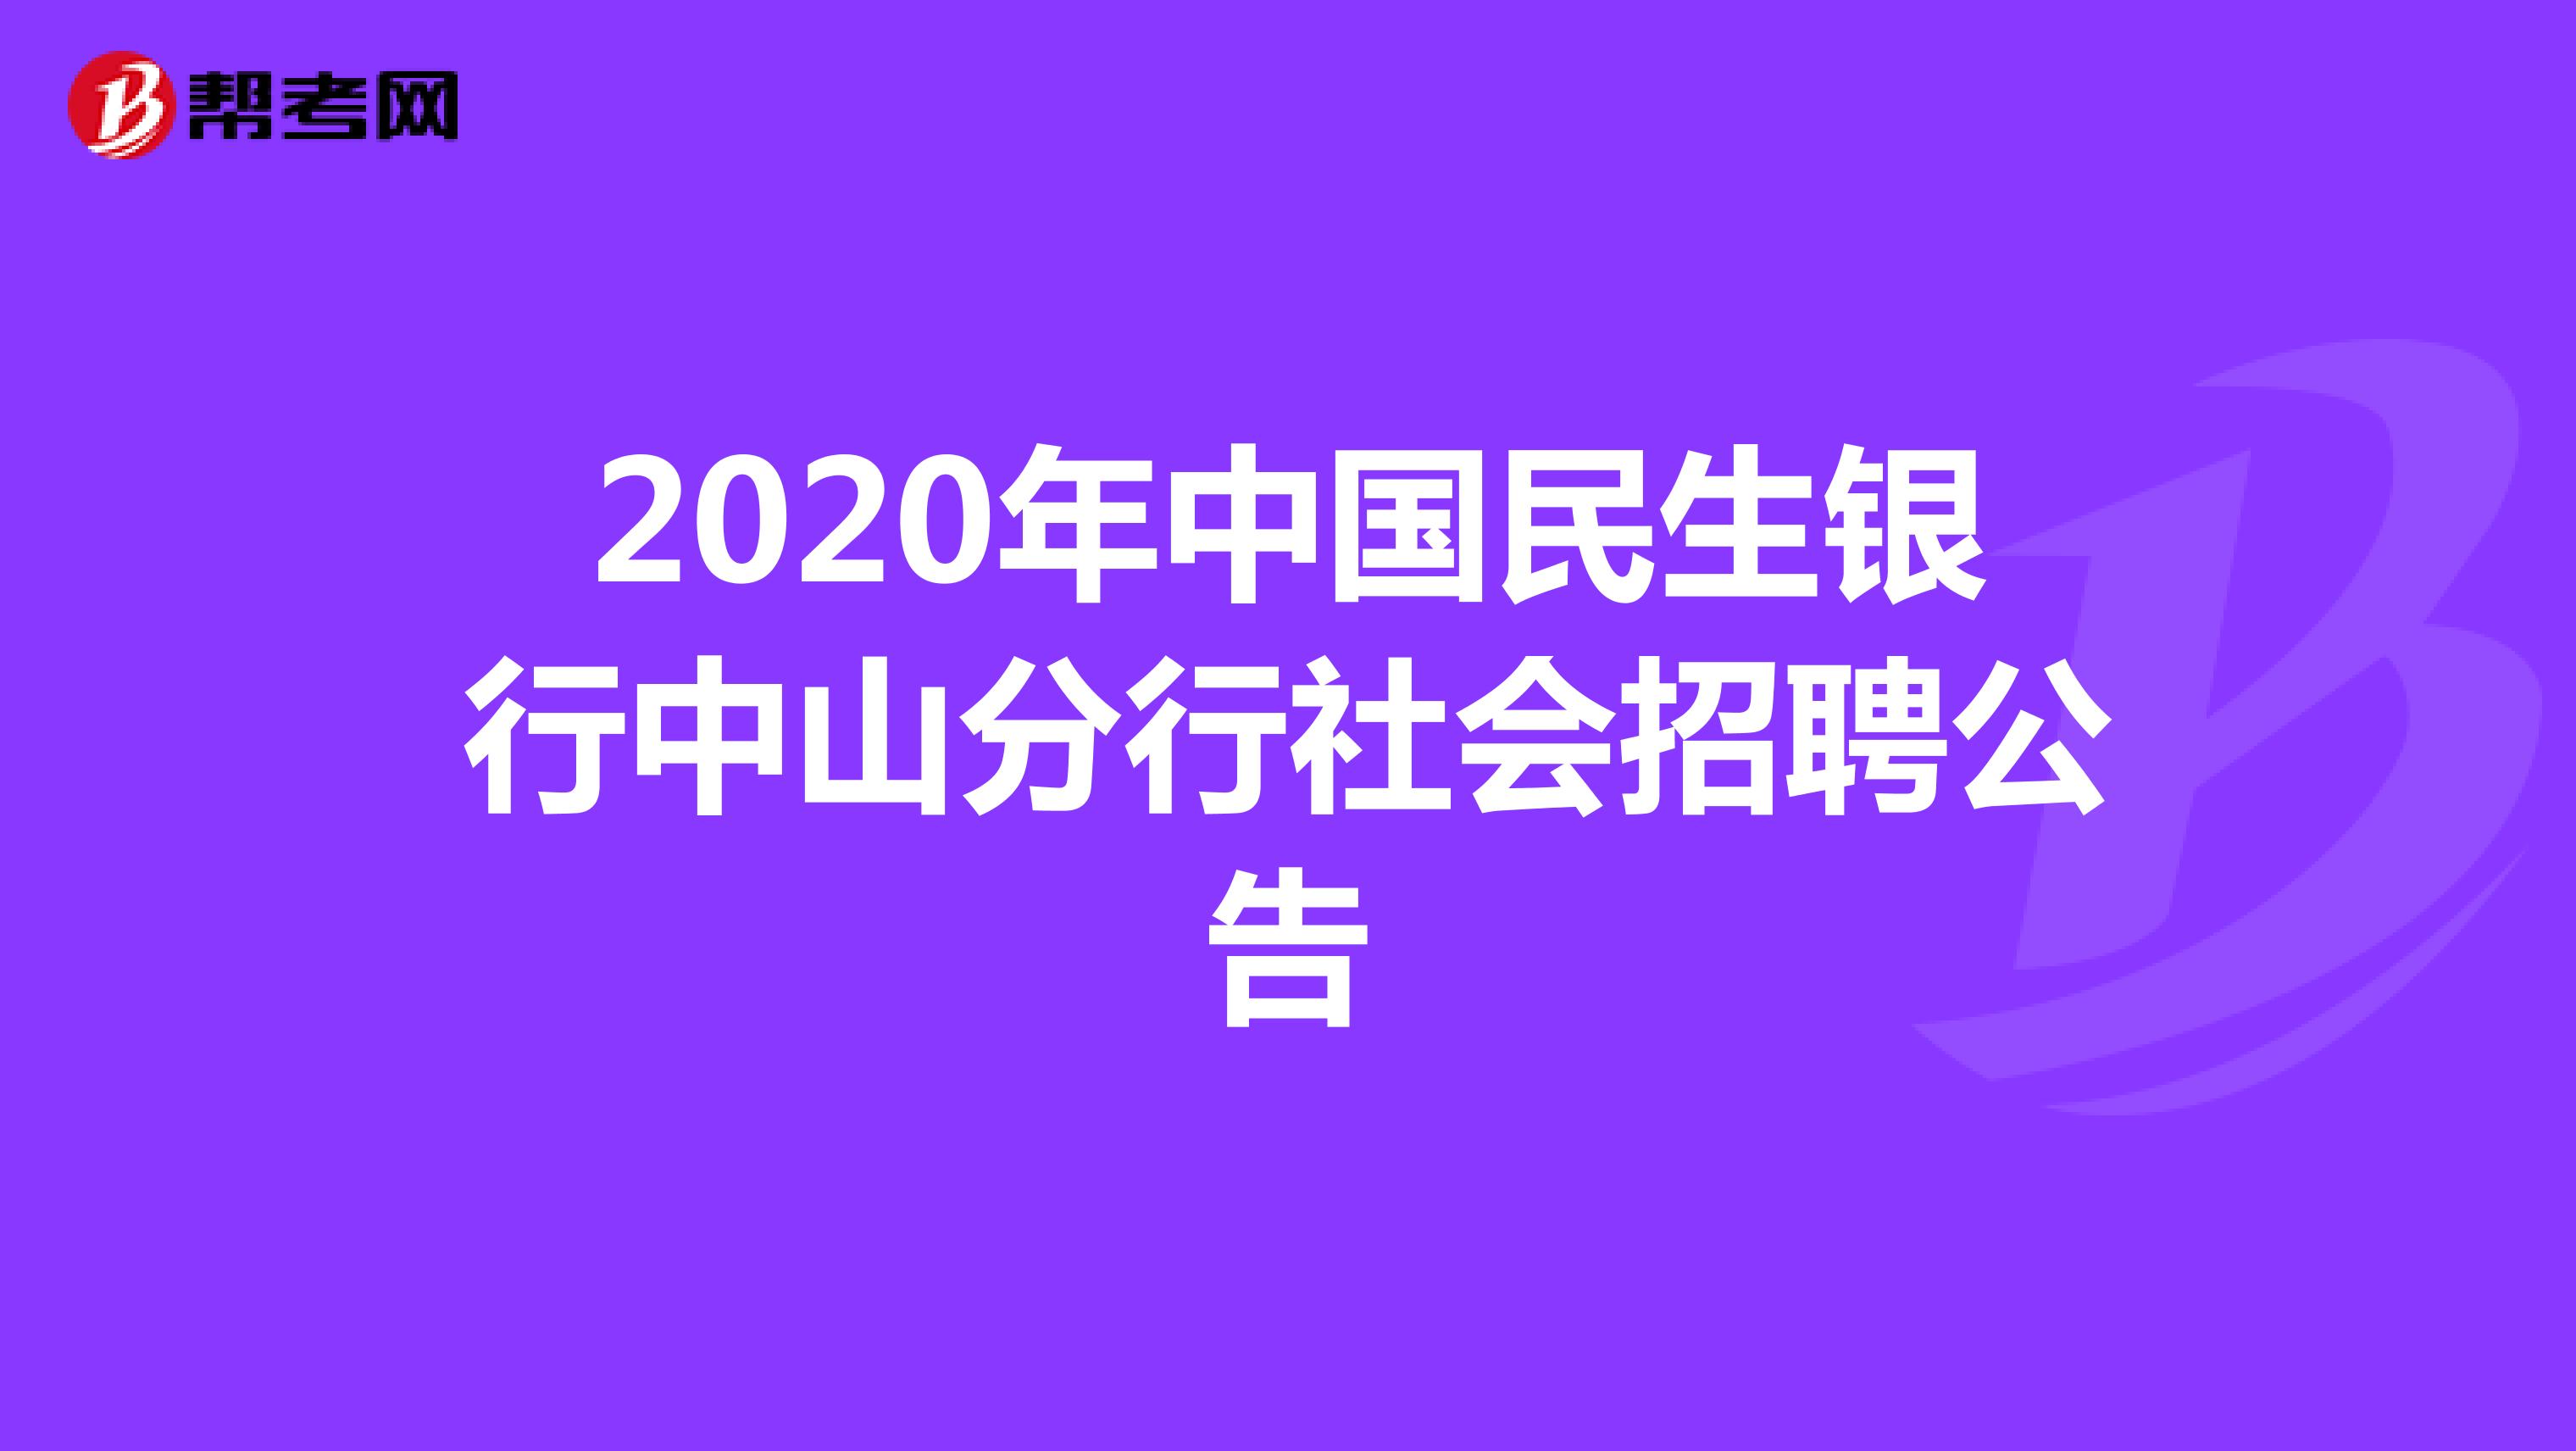 2020年中国民生银行中山分行社会招聘公告